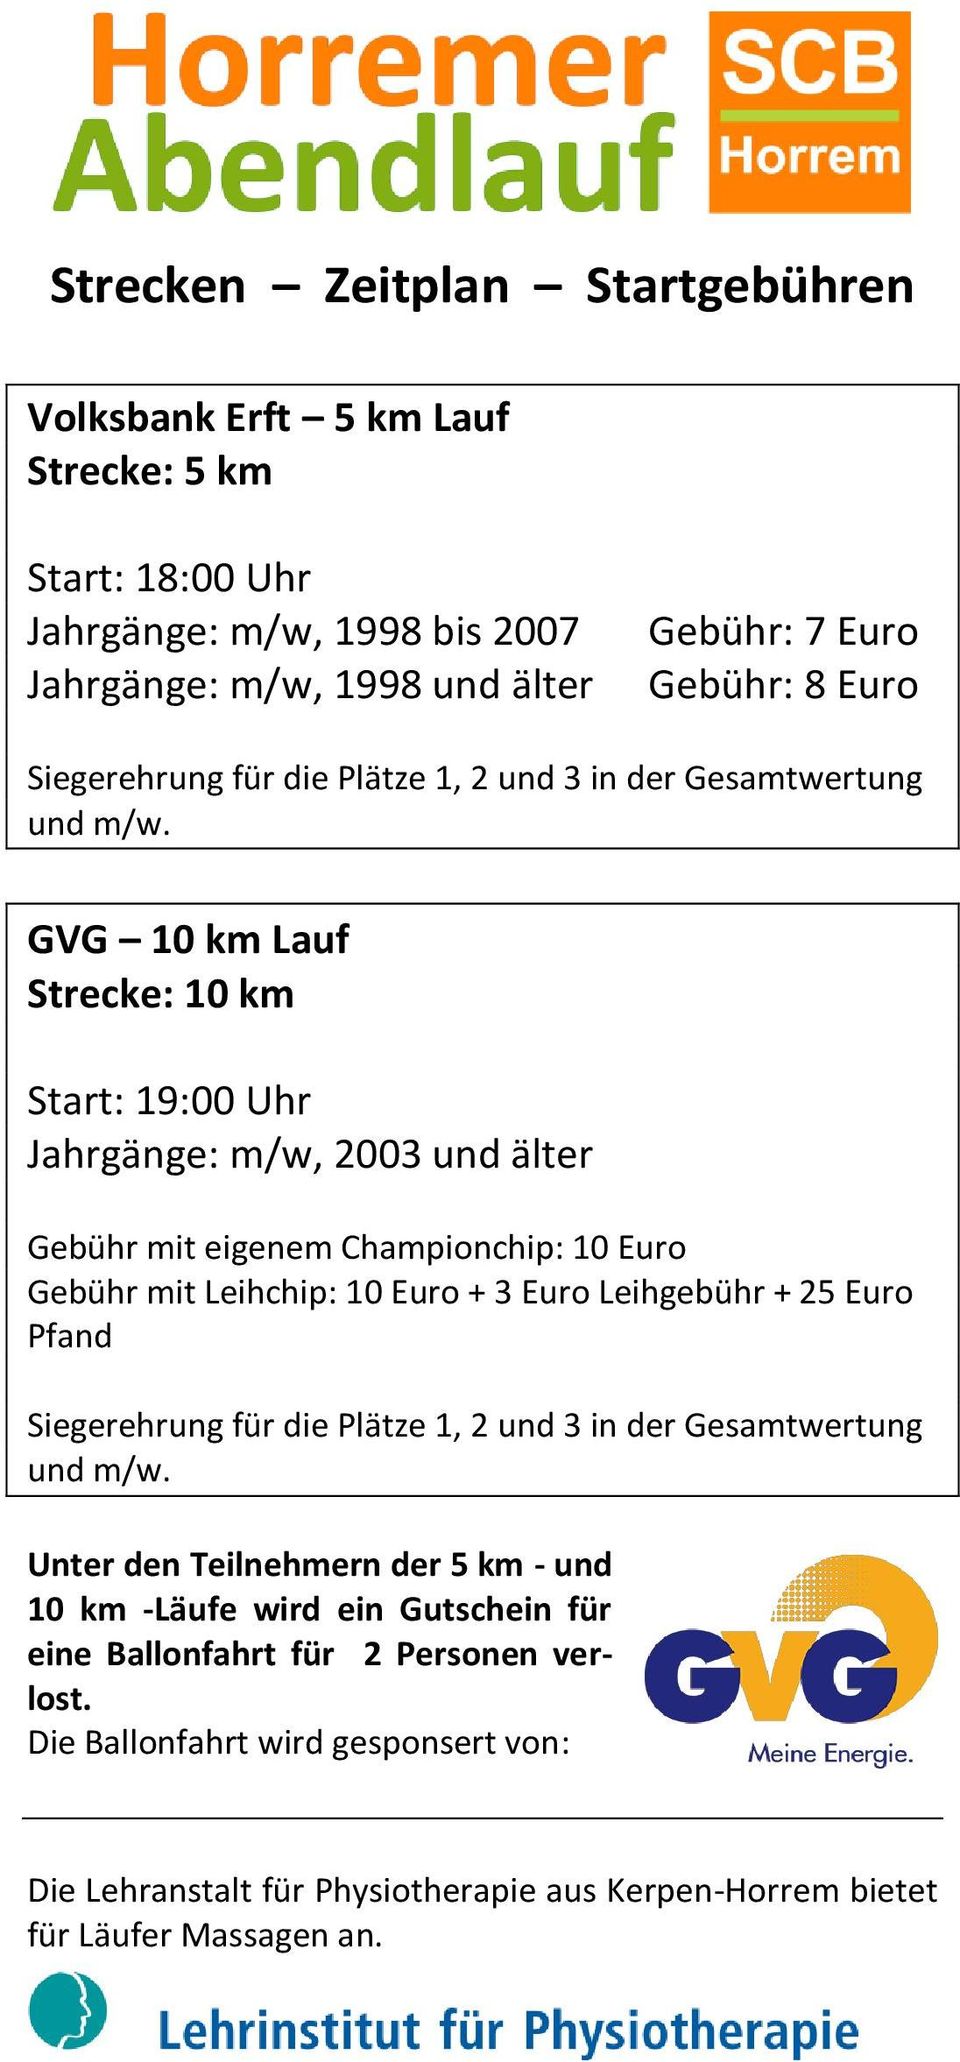 GVG 10 km Lauf Strecke: 10 km Start: 19:00 Uhr Jahrgänge: m/w, 2003 und älter Gebühr mit eigenem Championchip: 10 Euro Gebühr mit Leihchip: 10 Euro + 3 Euro Leihgebühr + 25 Euro Pfand